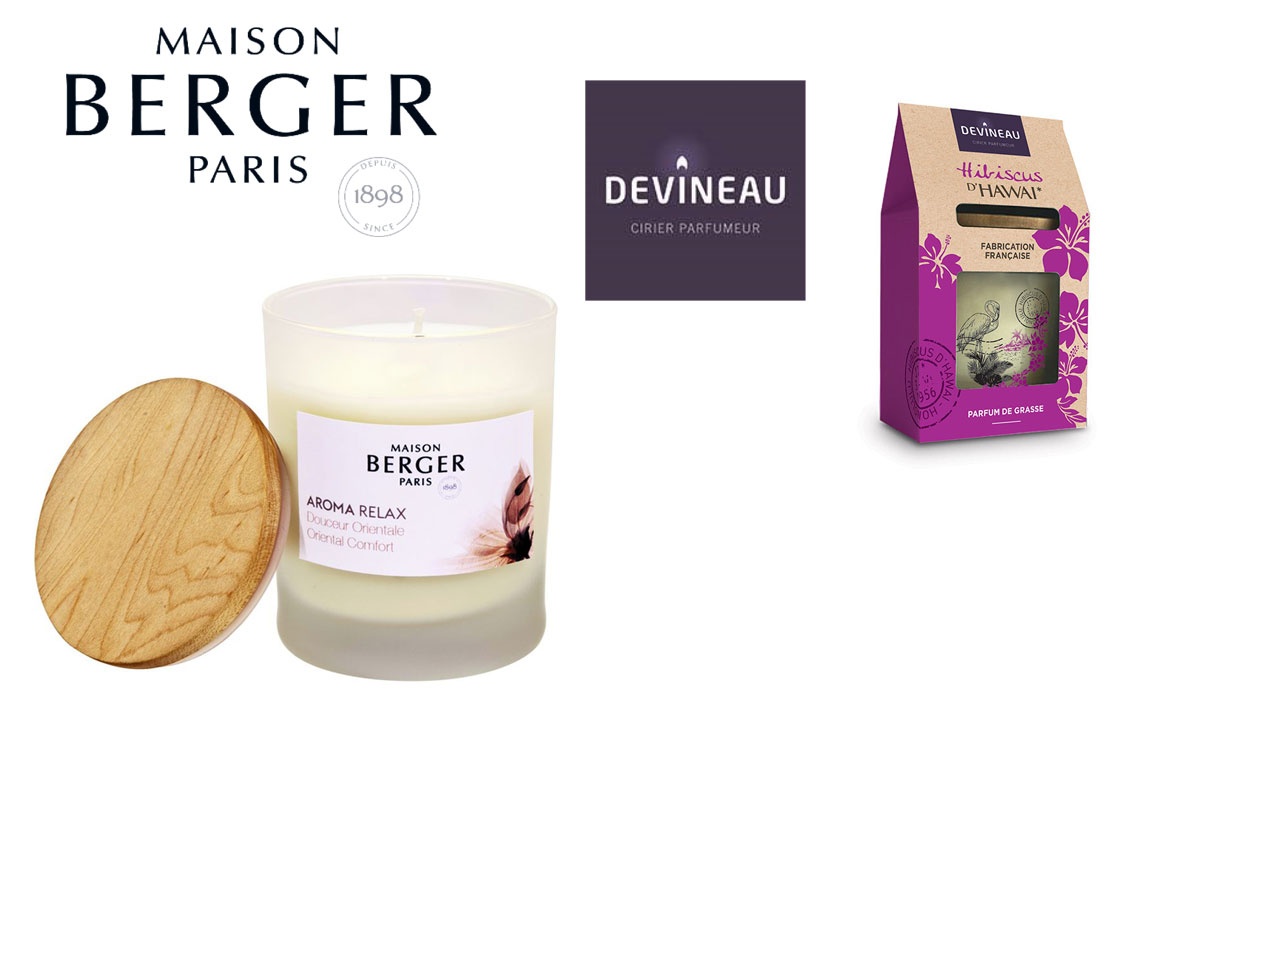 Maison Berger Paris acquiert le groupe Devineau